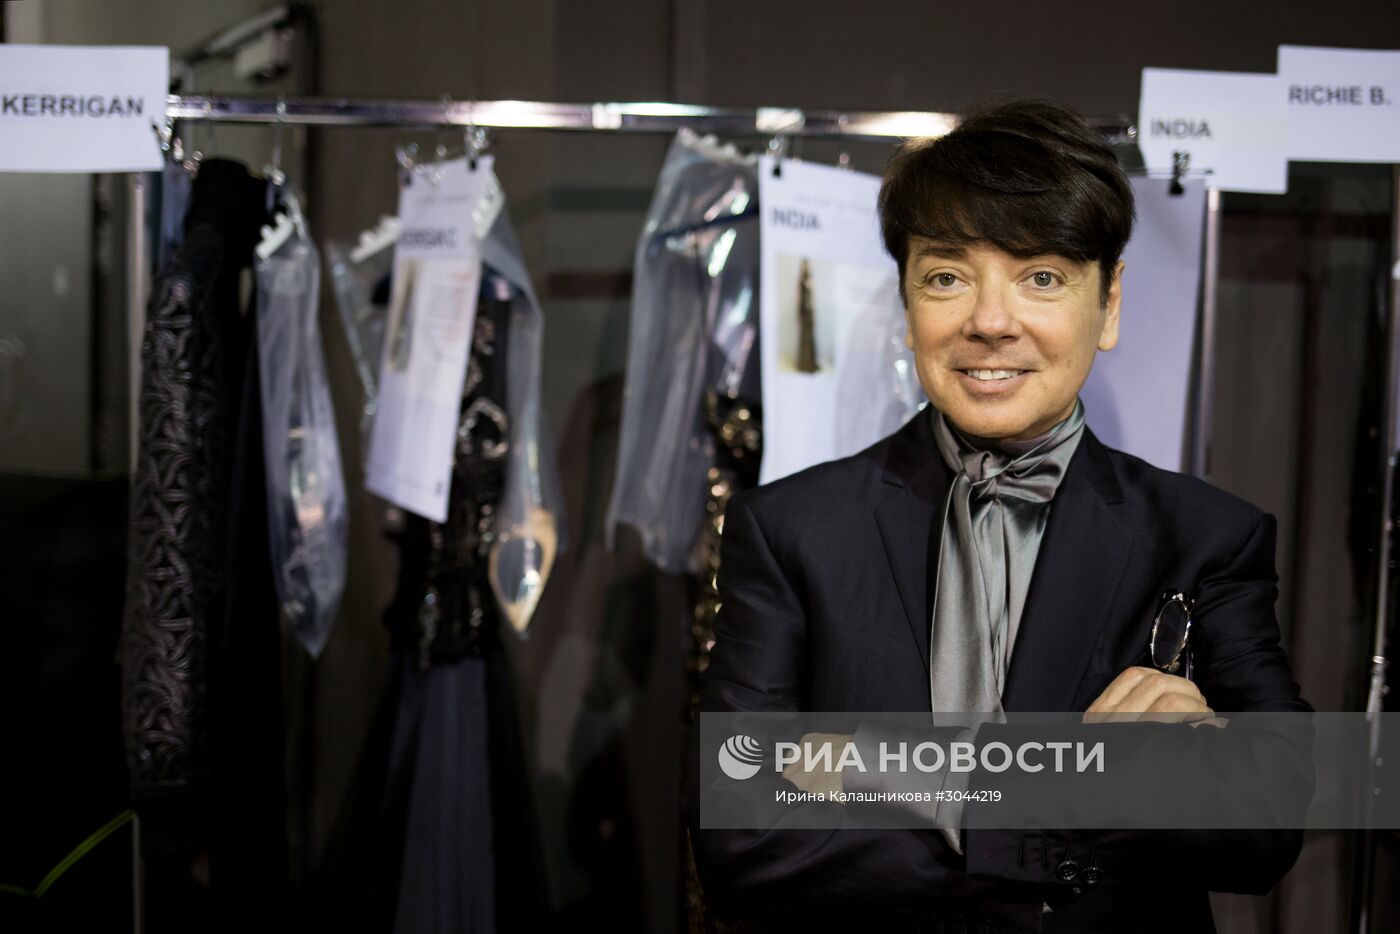 Дом моды Валентина Юдашкина представил новую коллекцию на Неделе моды в Париже